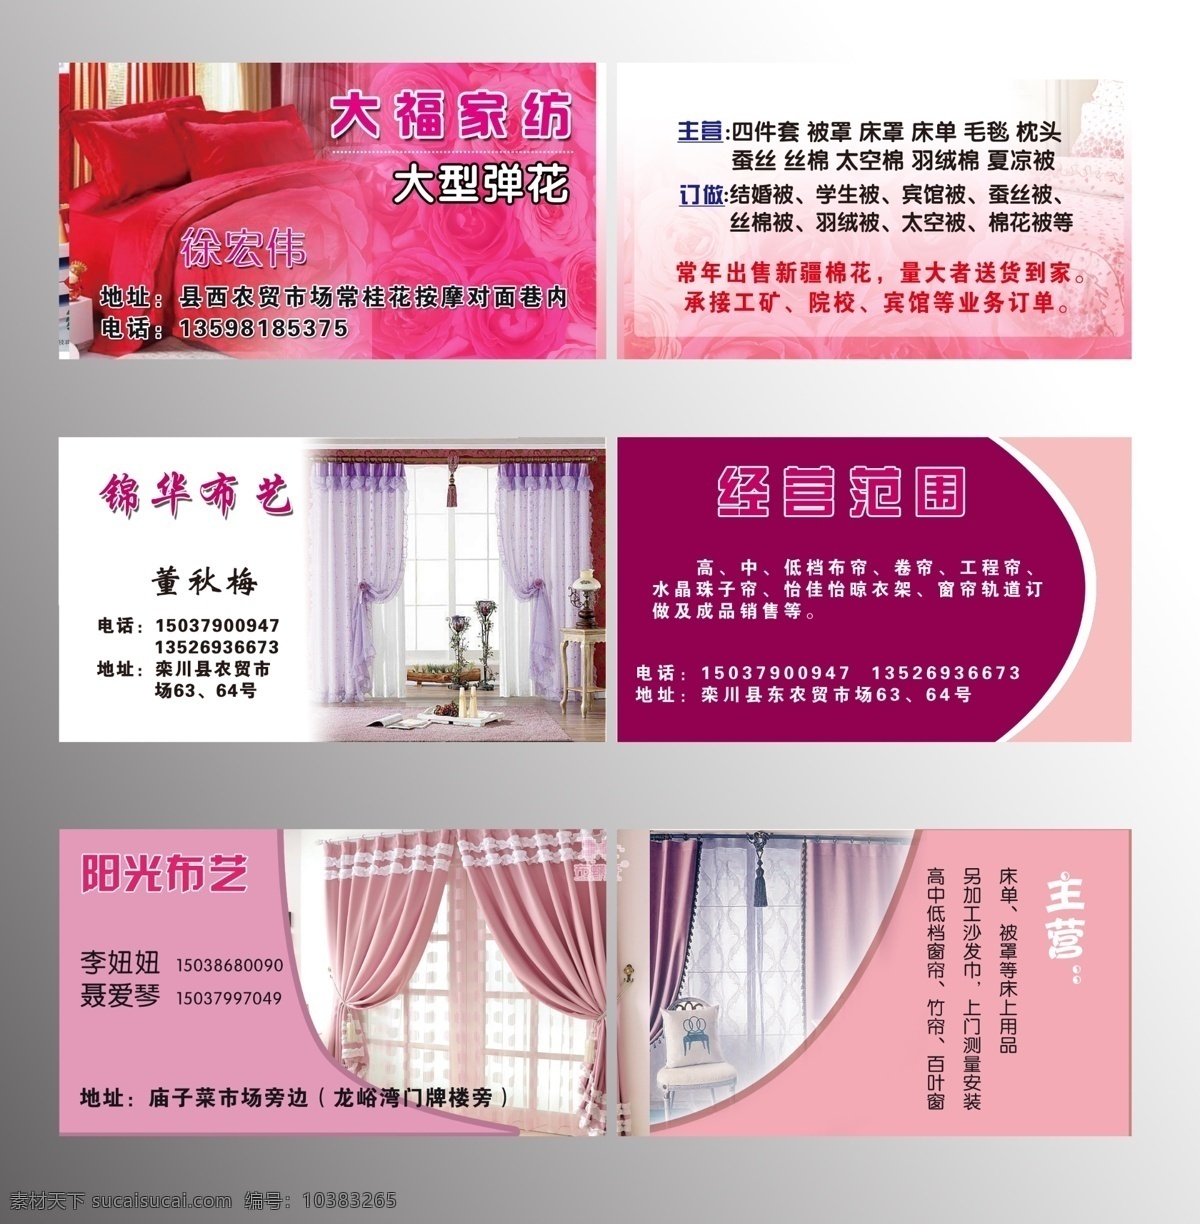 窗帘布艺名片 模版下载 窗帘 布艺 名片 粉色 玫瑰 四件套 名片卡片 广告设计模板 源文件